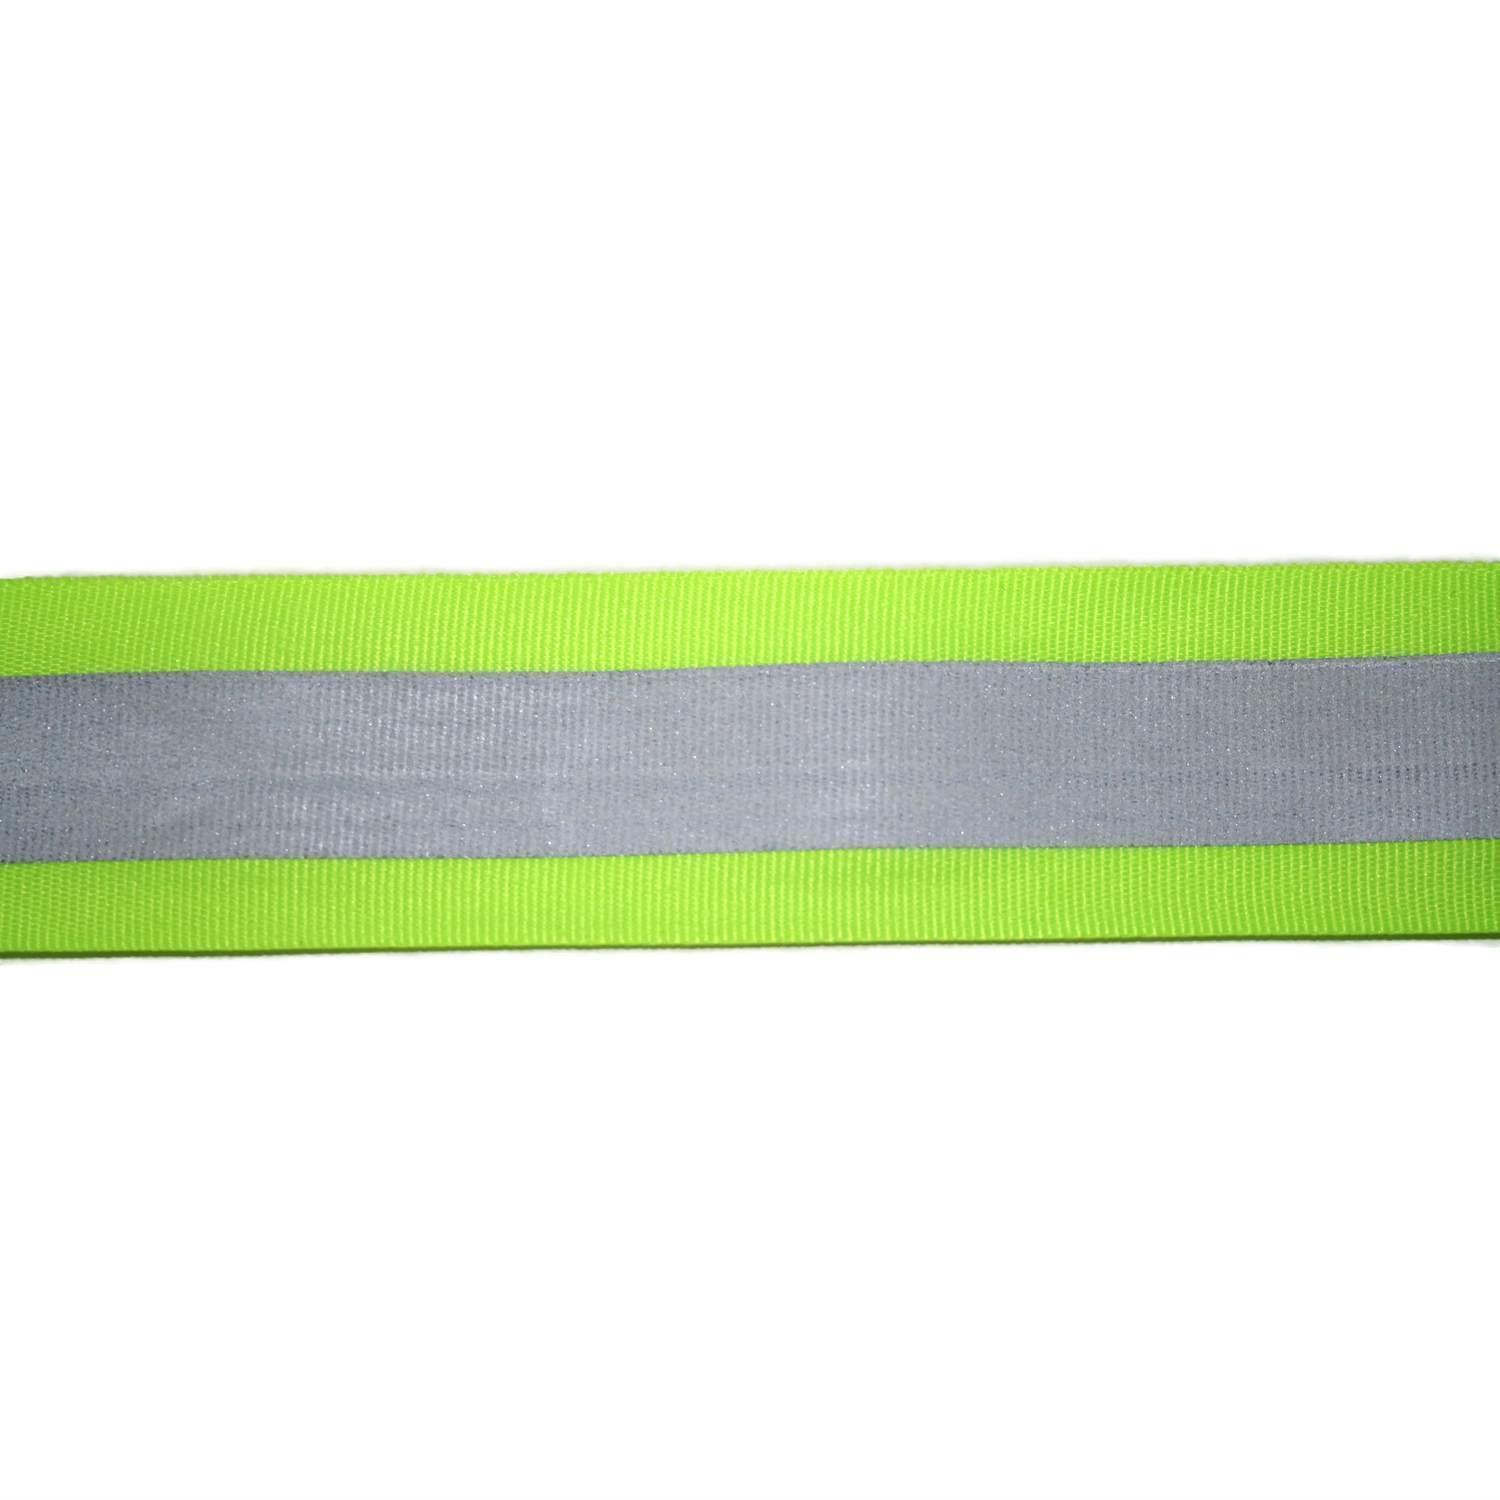 Reflektorband 60mm breit in 2 Farben gelbgrün-silber 05 Meter